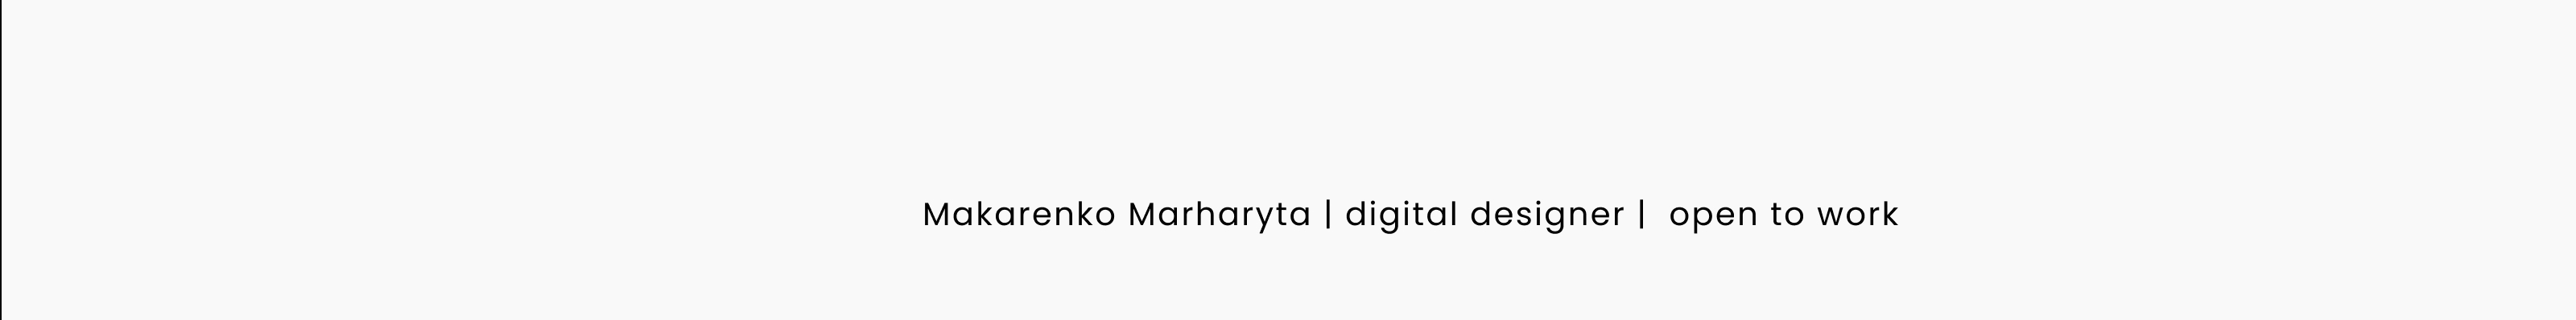 Banner de perfil de Marharita Makarenko